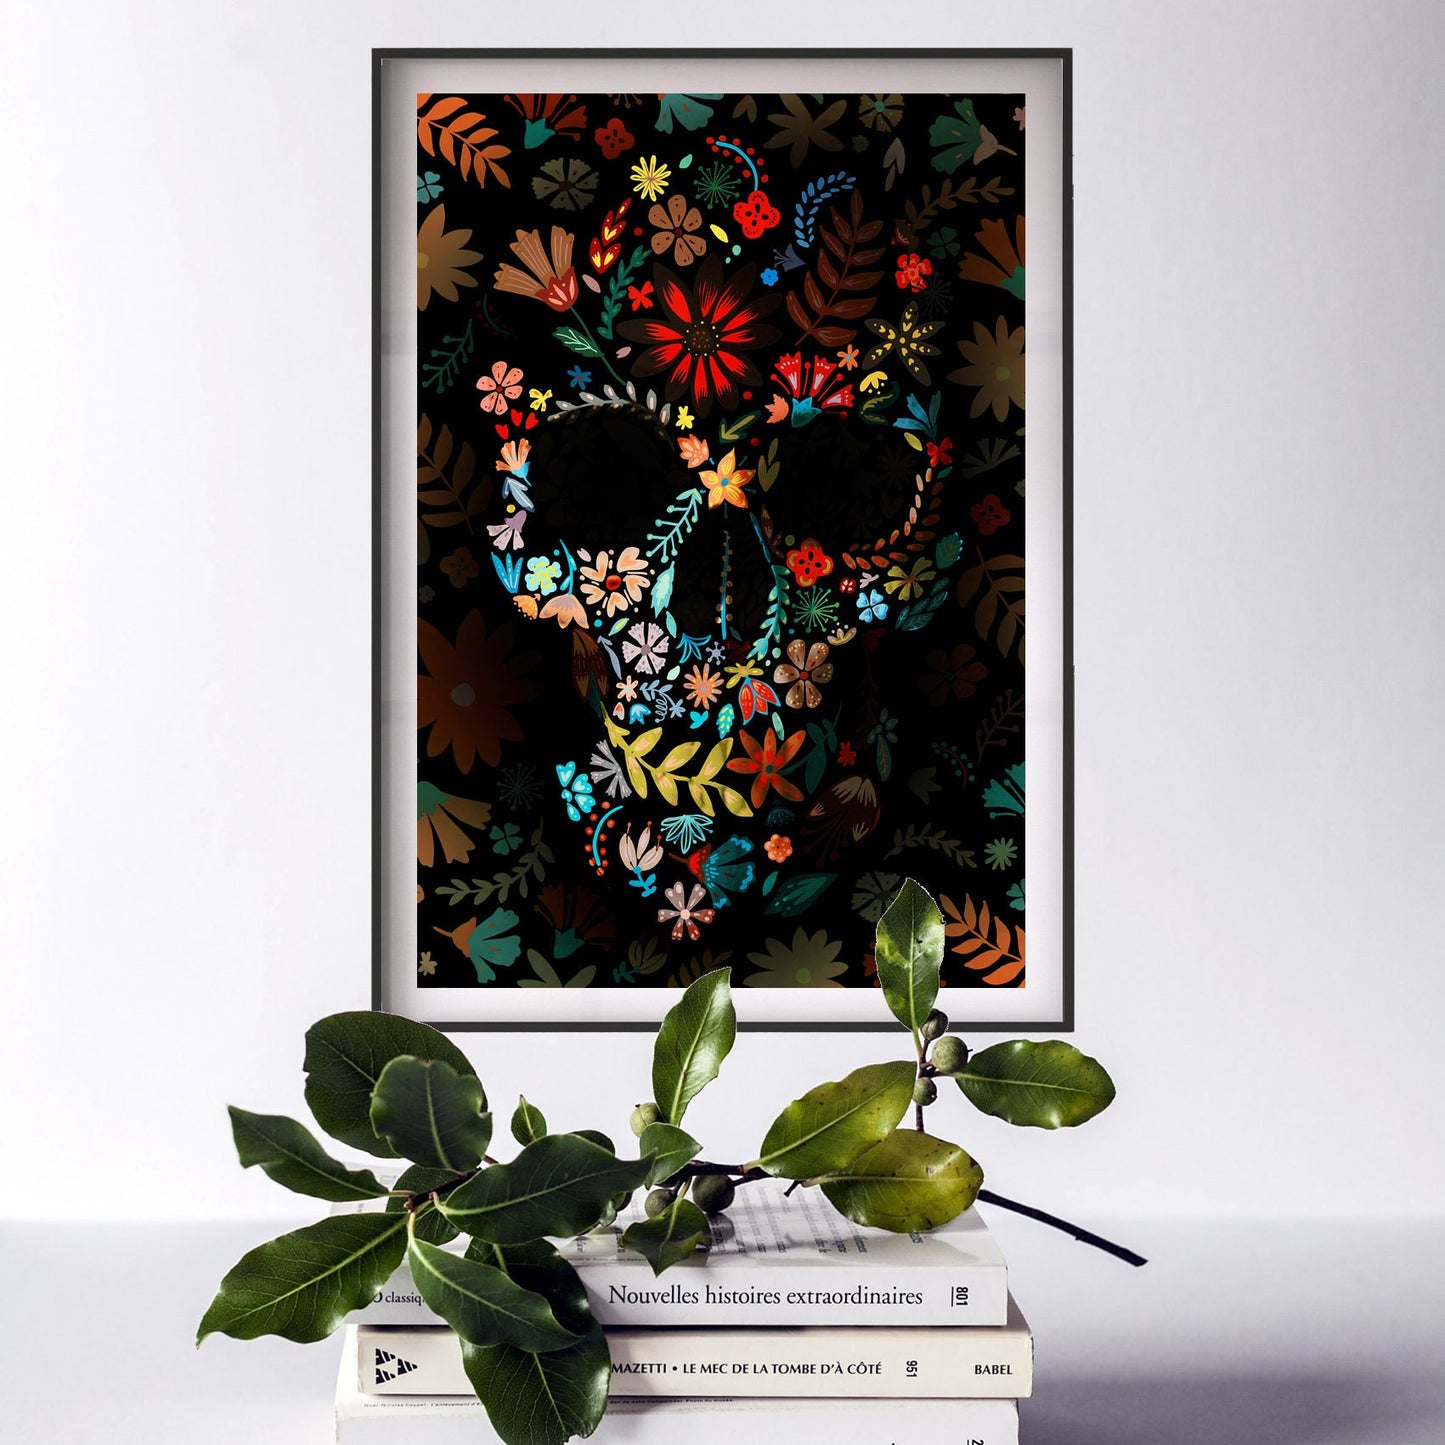 Flower Skull Poster, Sugar Skull Art Print, Flowery Skull Poster Wall Art Gift, Nature Folk Art Skull Home Decor, Floral Boho Skull Art